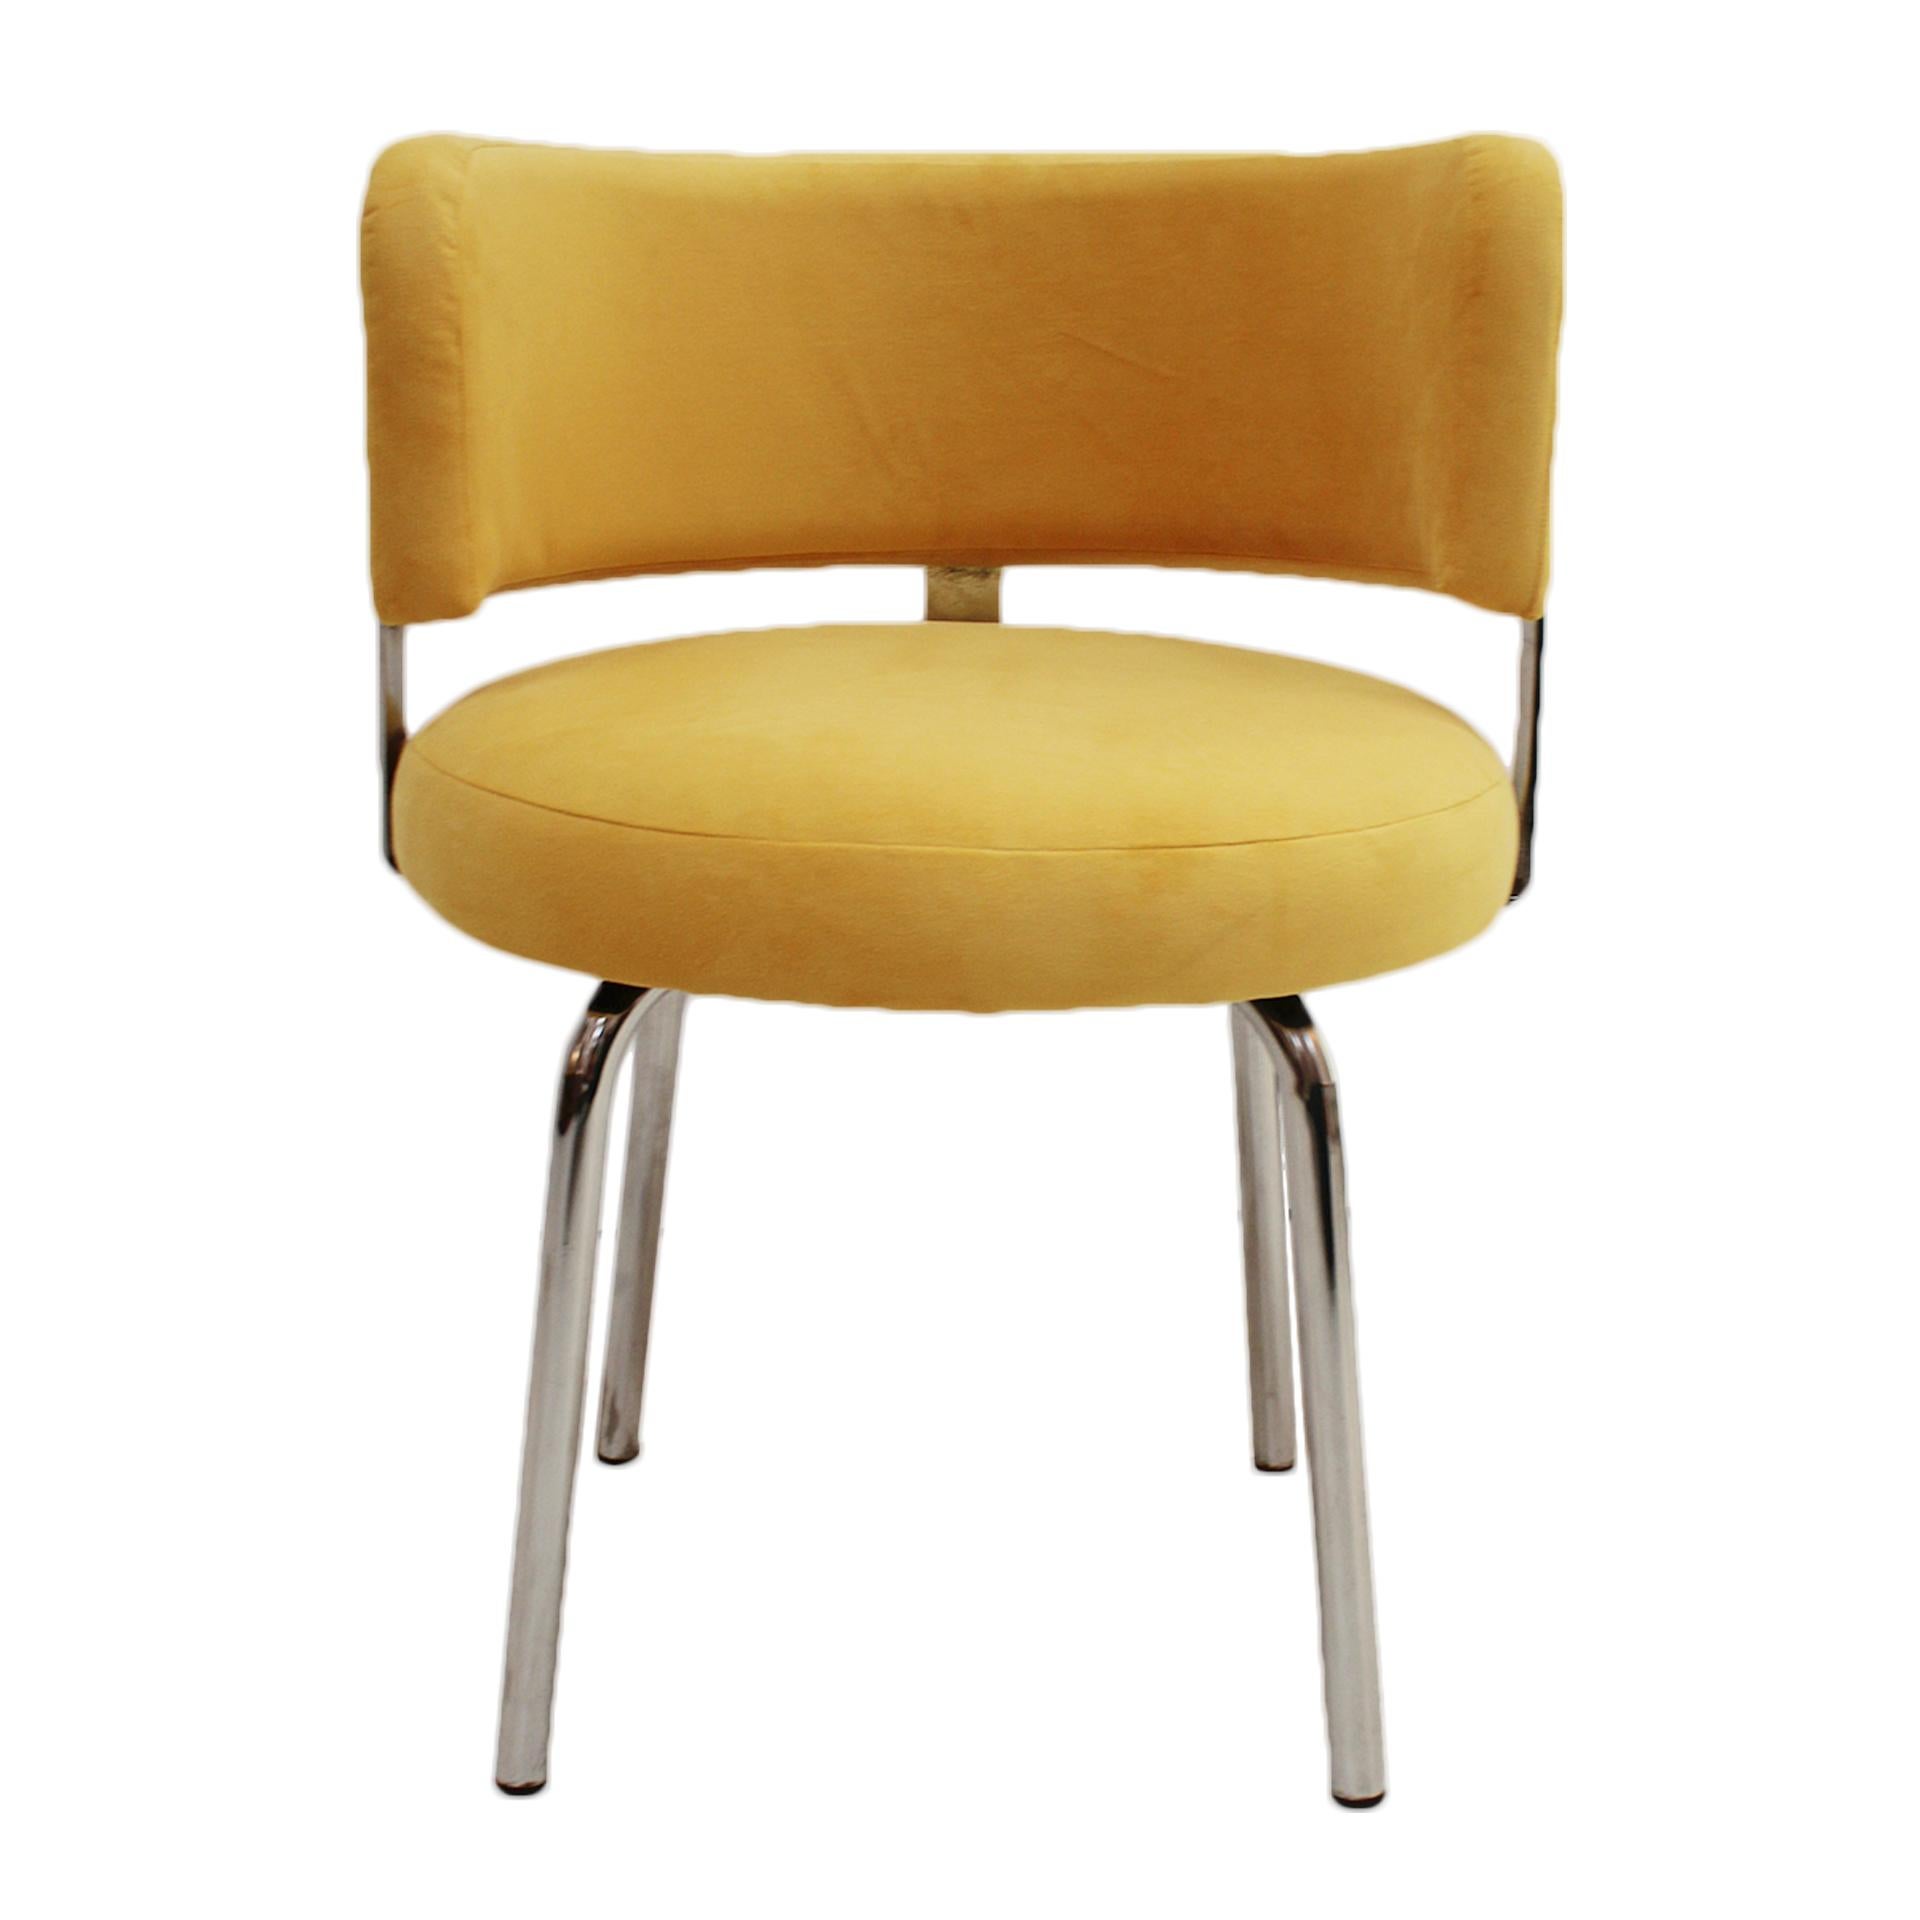 Paire de chaises italiennes de style Bauhaus réalisées dans les années 70 pour Pizzi Arredamenti. Structure tubulaire en acier avec l'assise et le dossier rembourrés en velours de coton jaune.

Pizzi Industries était une fabrique de meubles située à